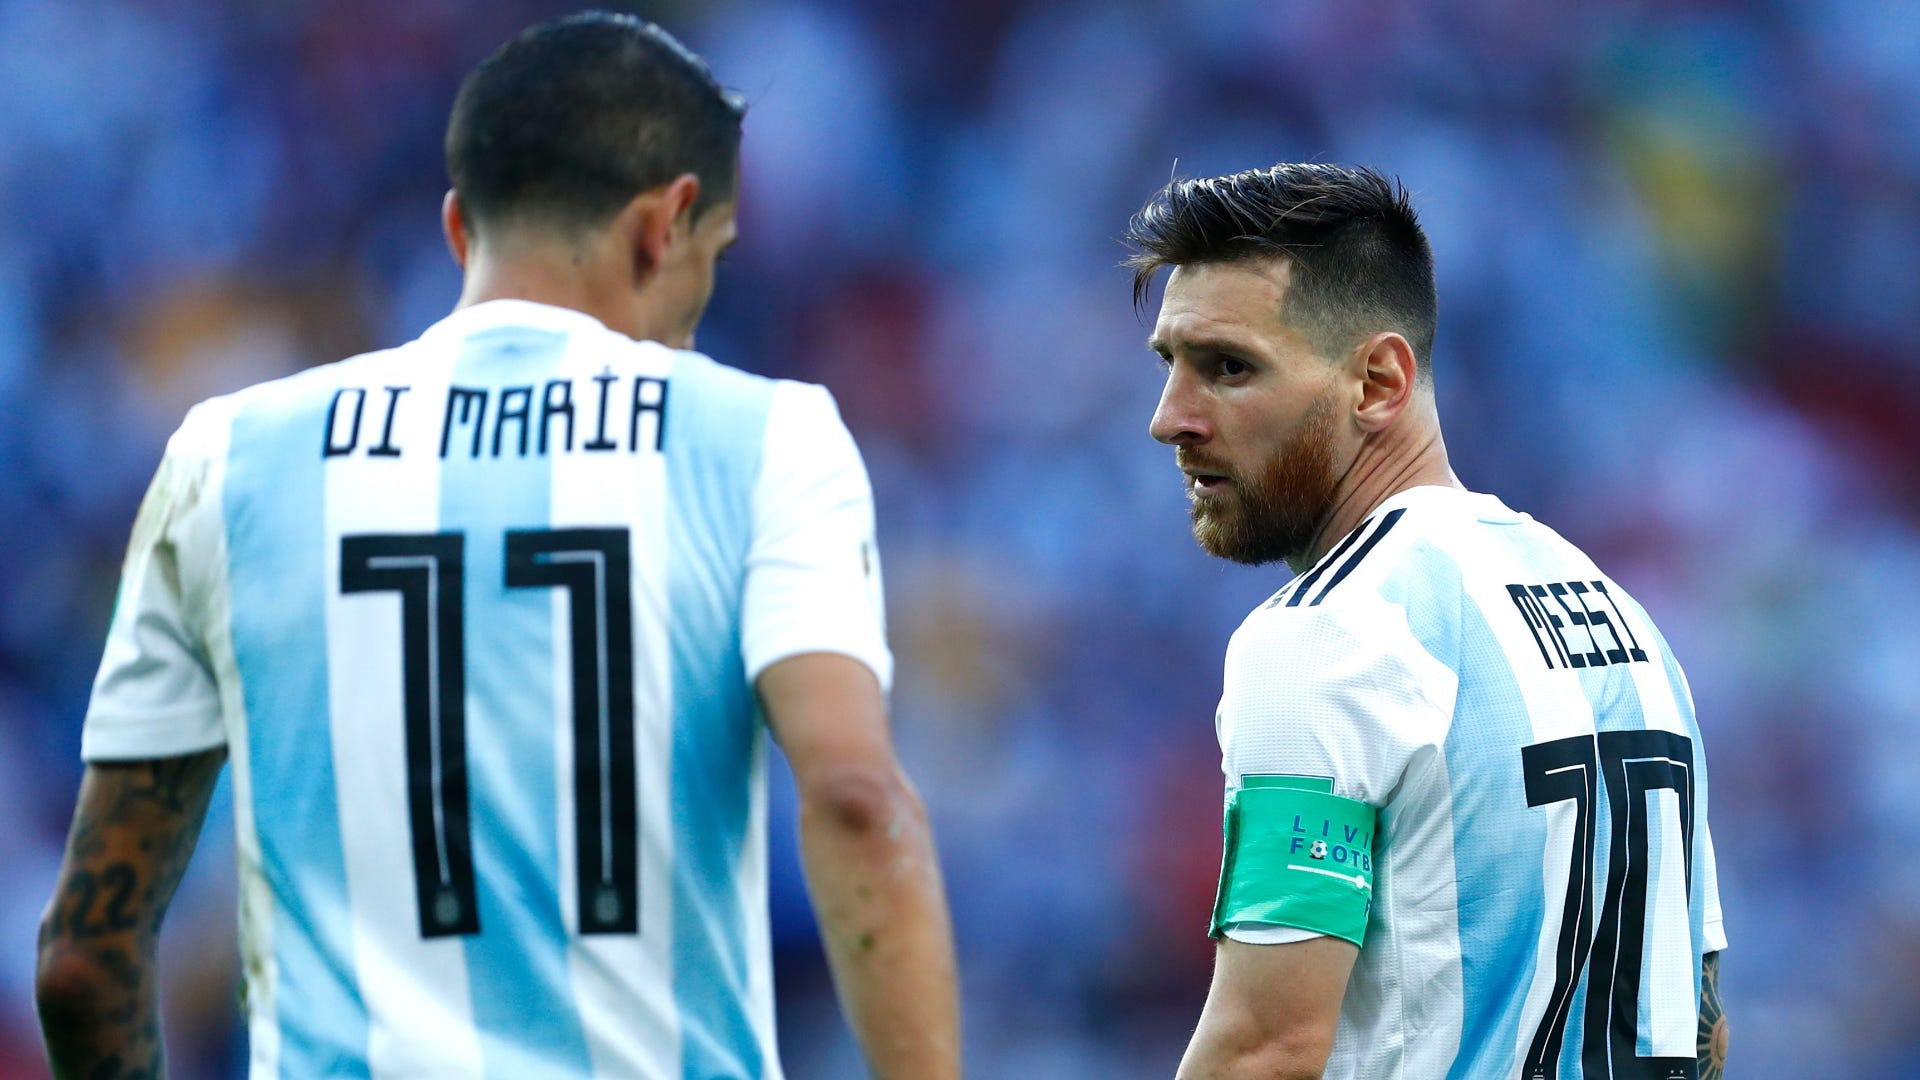 ĐT Argentina sẽ không thể thiếu được sự góp mặt của Lionel Messi trong các trận chiến đầy cam go, đầy kịch tính. Anh chàng này chính là trái tim của đội bóng và sẽ không bao giờ làm bạn thất vọng. Hãy dành ít phút để chiêm ngưỡng bức hình chất lượng cao của Messi trên sân cỏ.